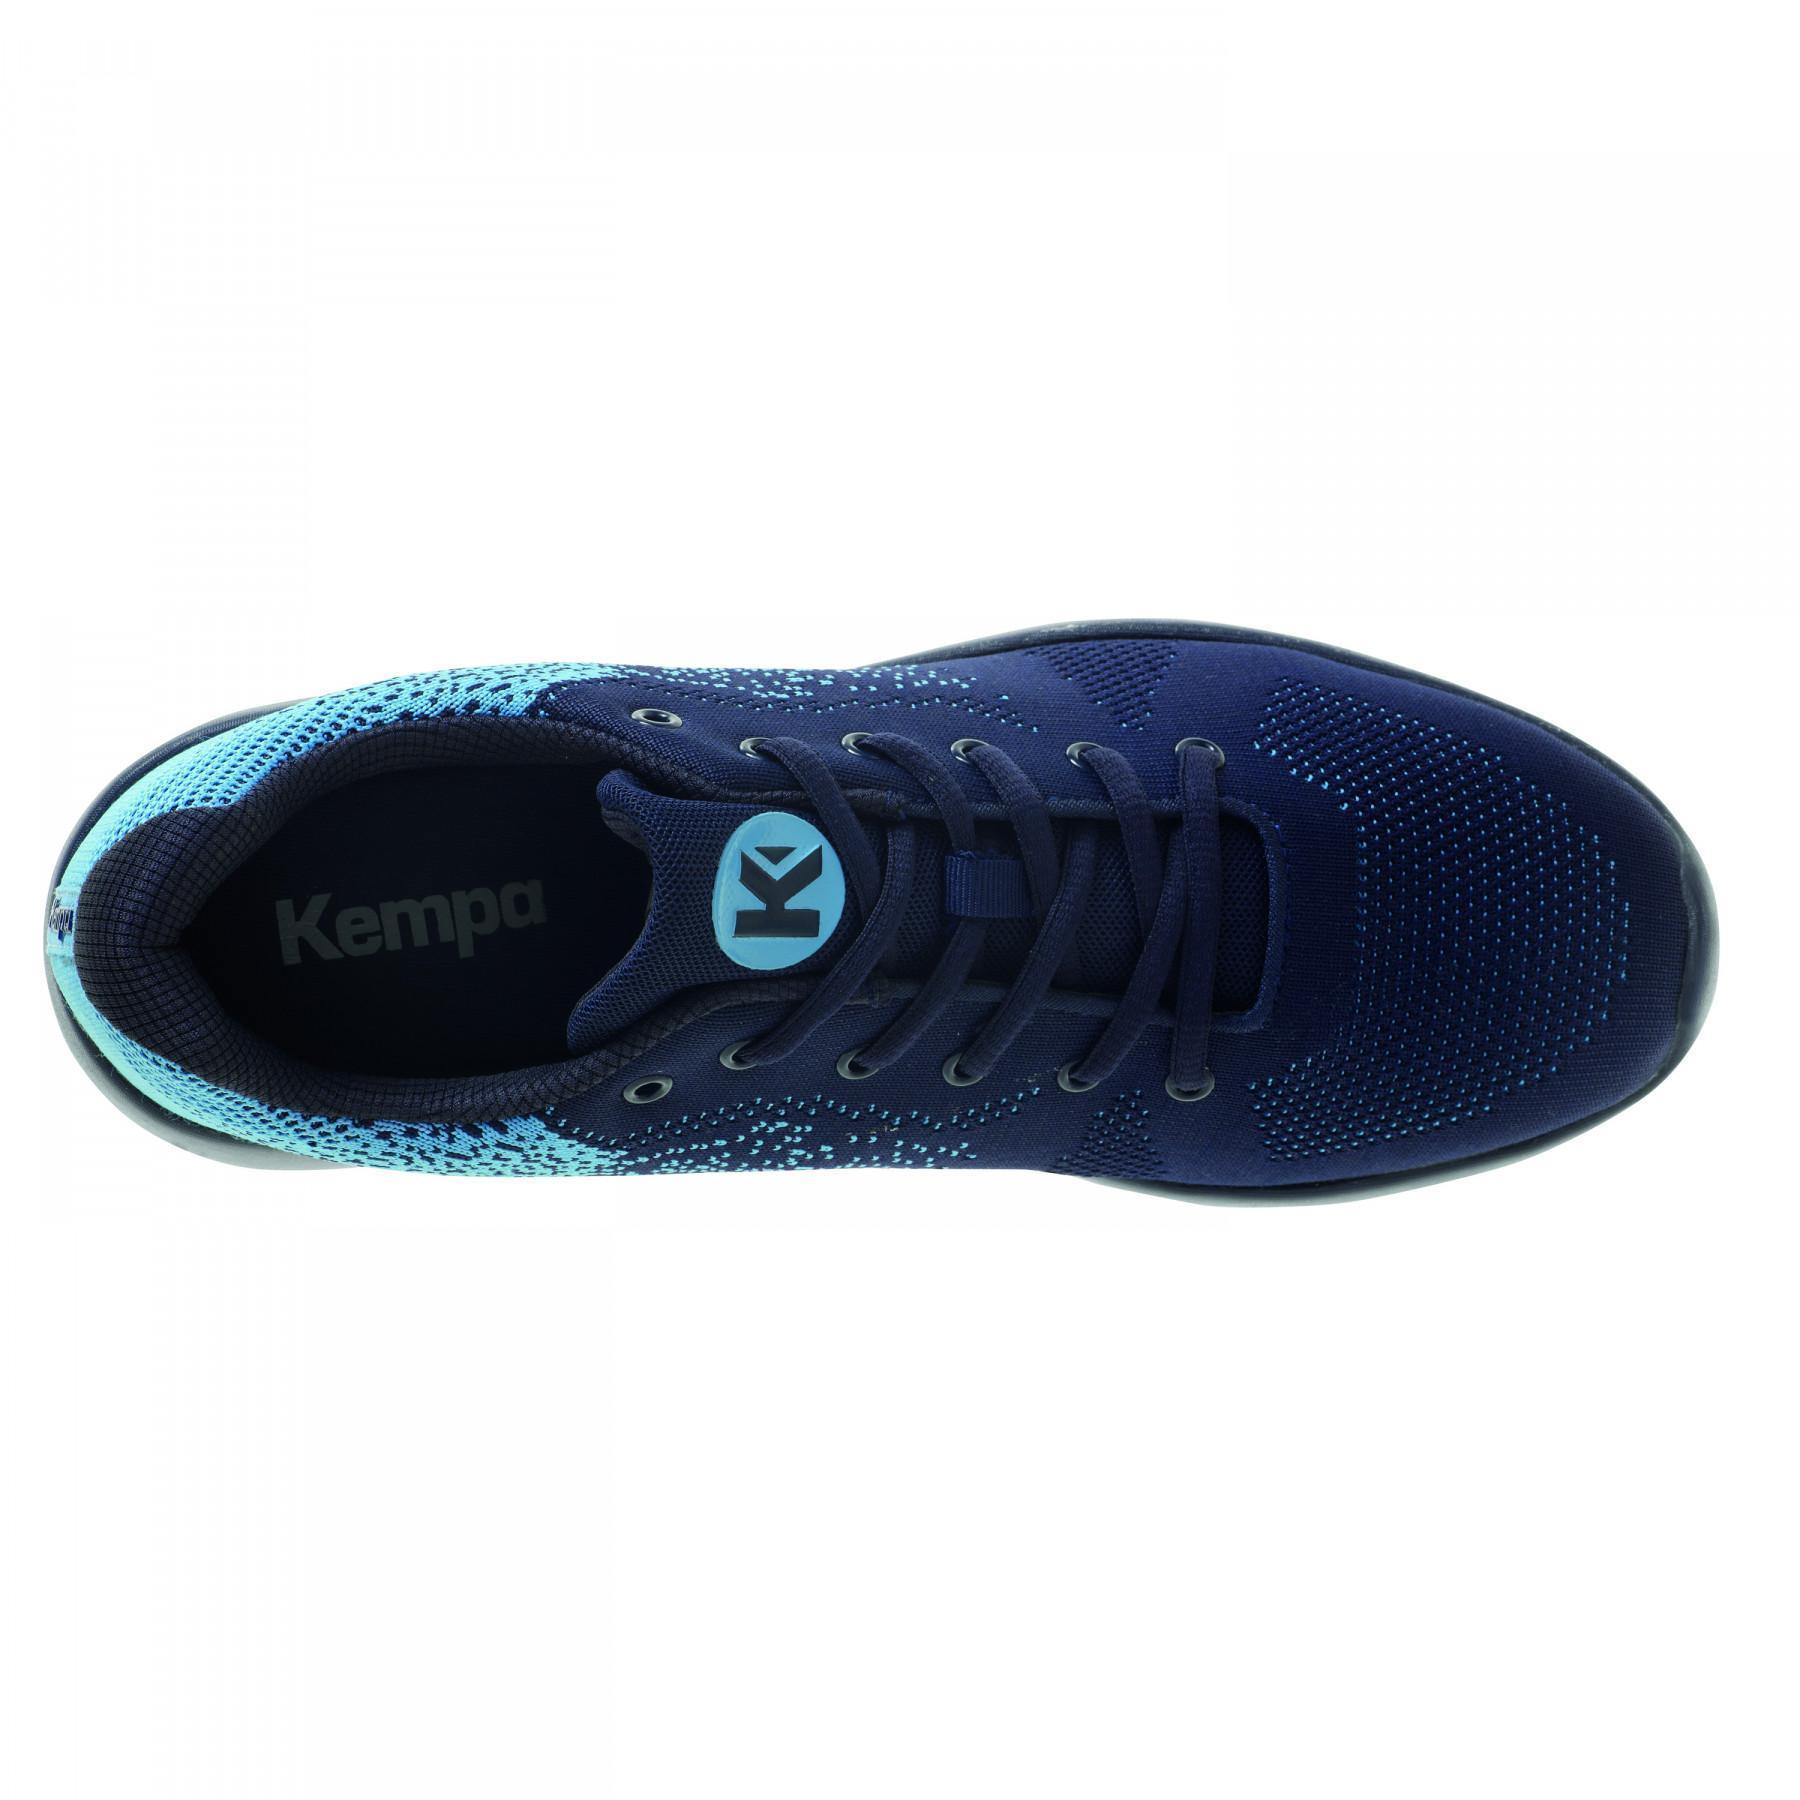 Sapatos Kempa K-Float